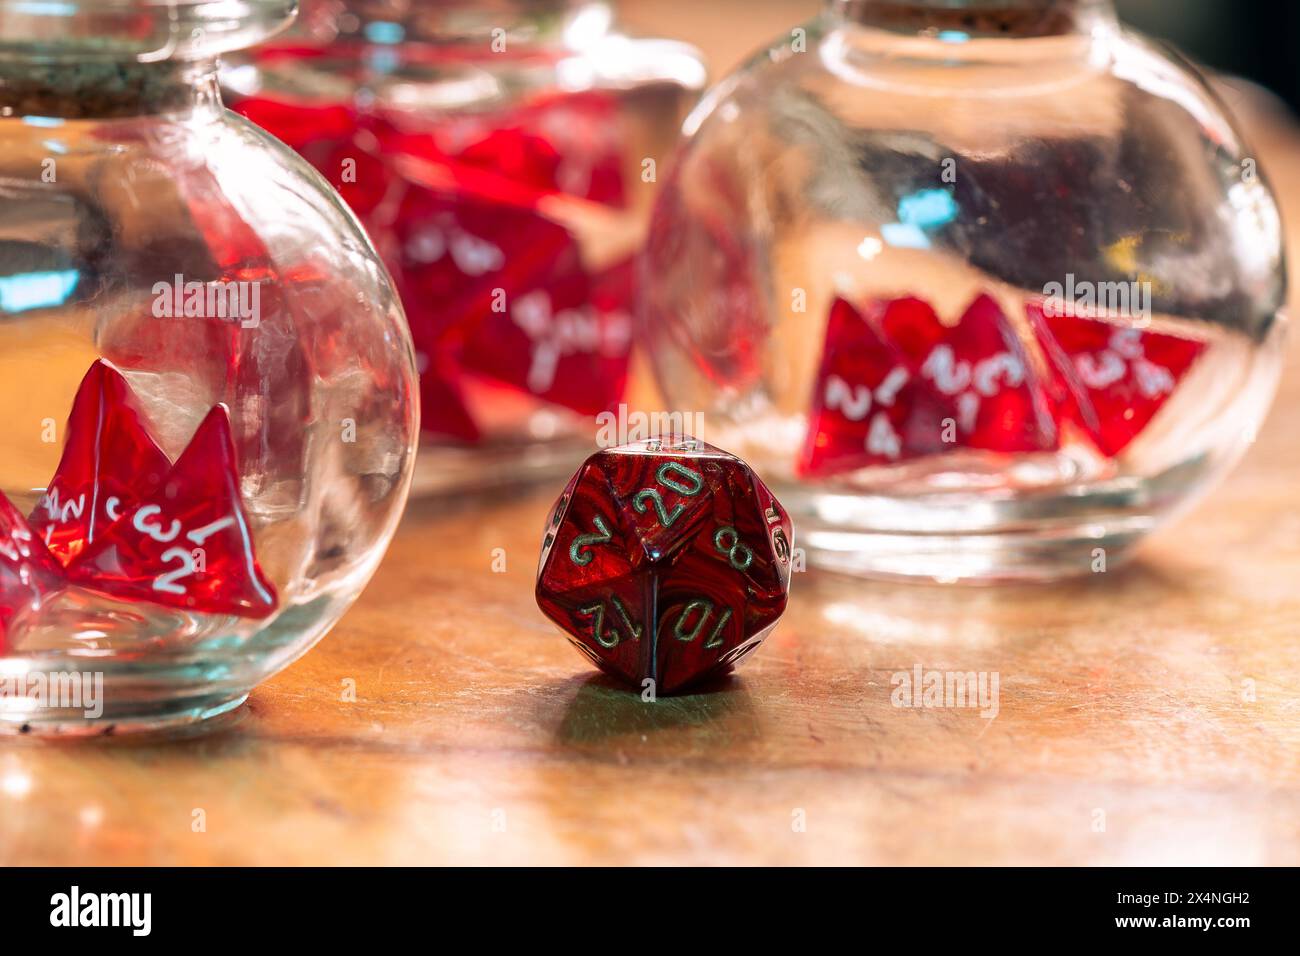 Un seul dé rouge se tient bien en évidence dans la mise au point, contrastant avec des dés flous dans des bocaux en verre en arrière-plan, sur une table en bois rustique Banque D'Images